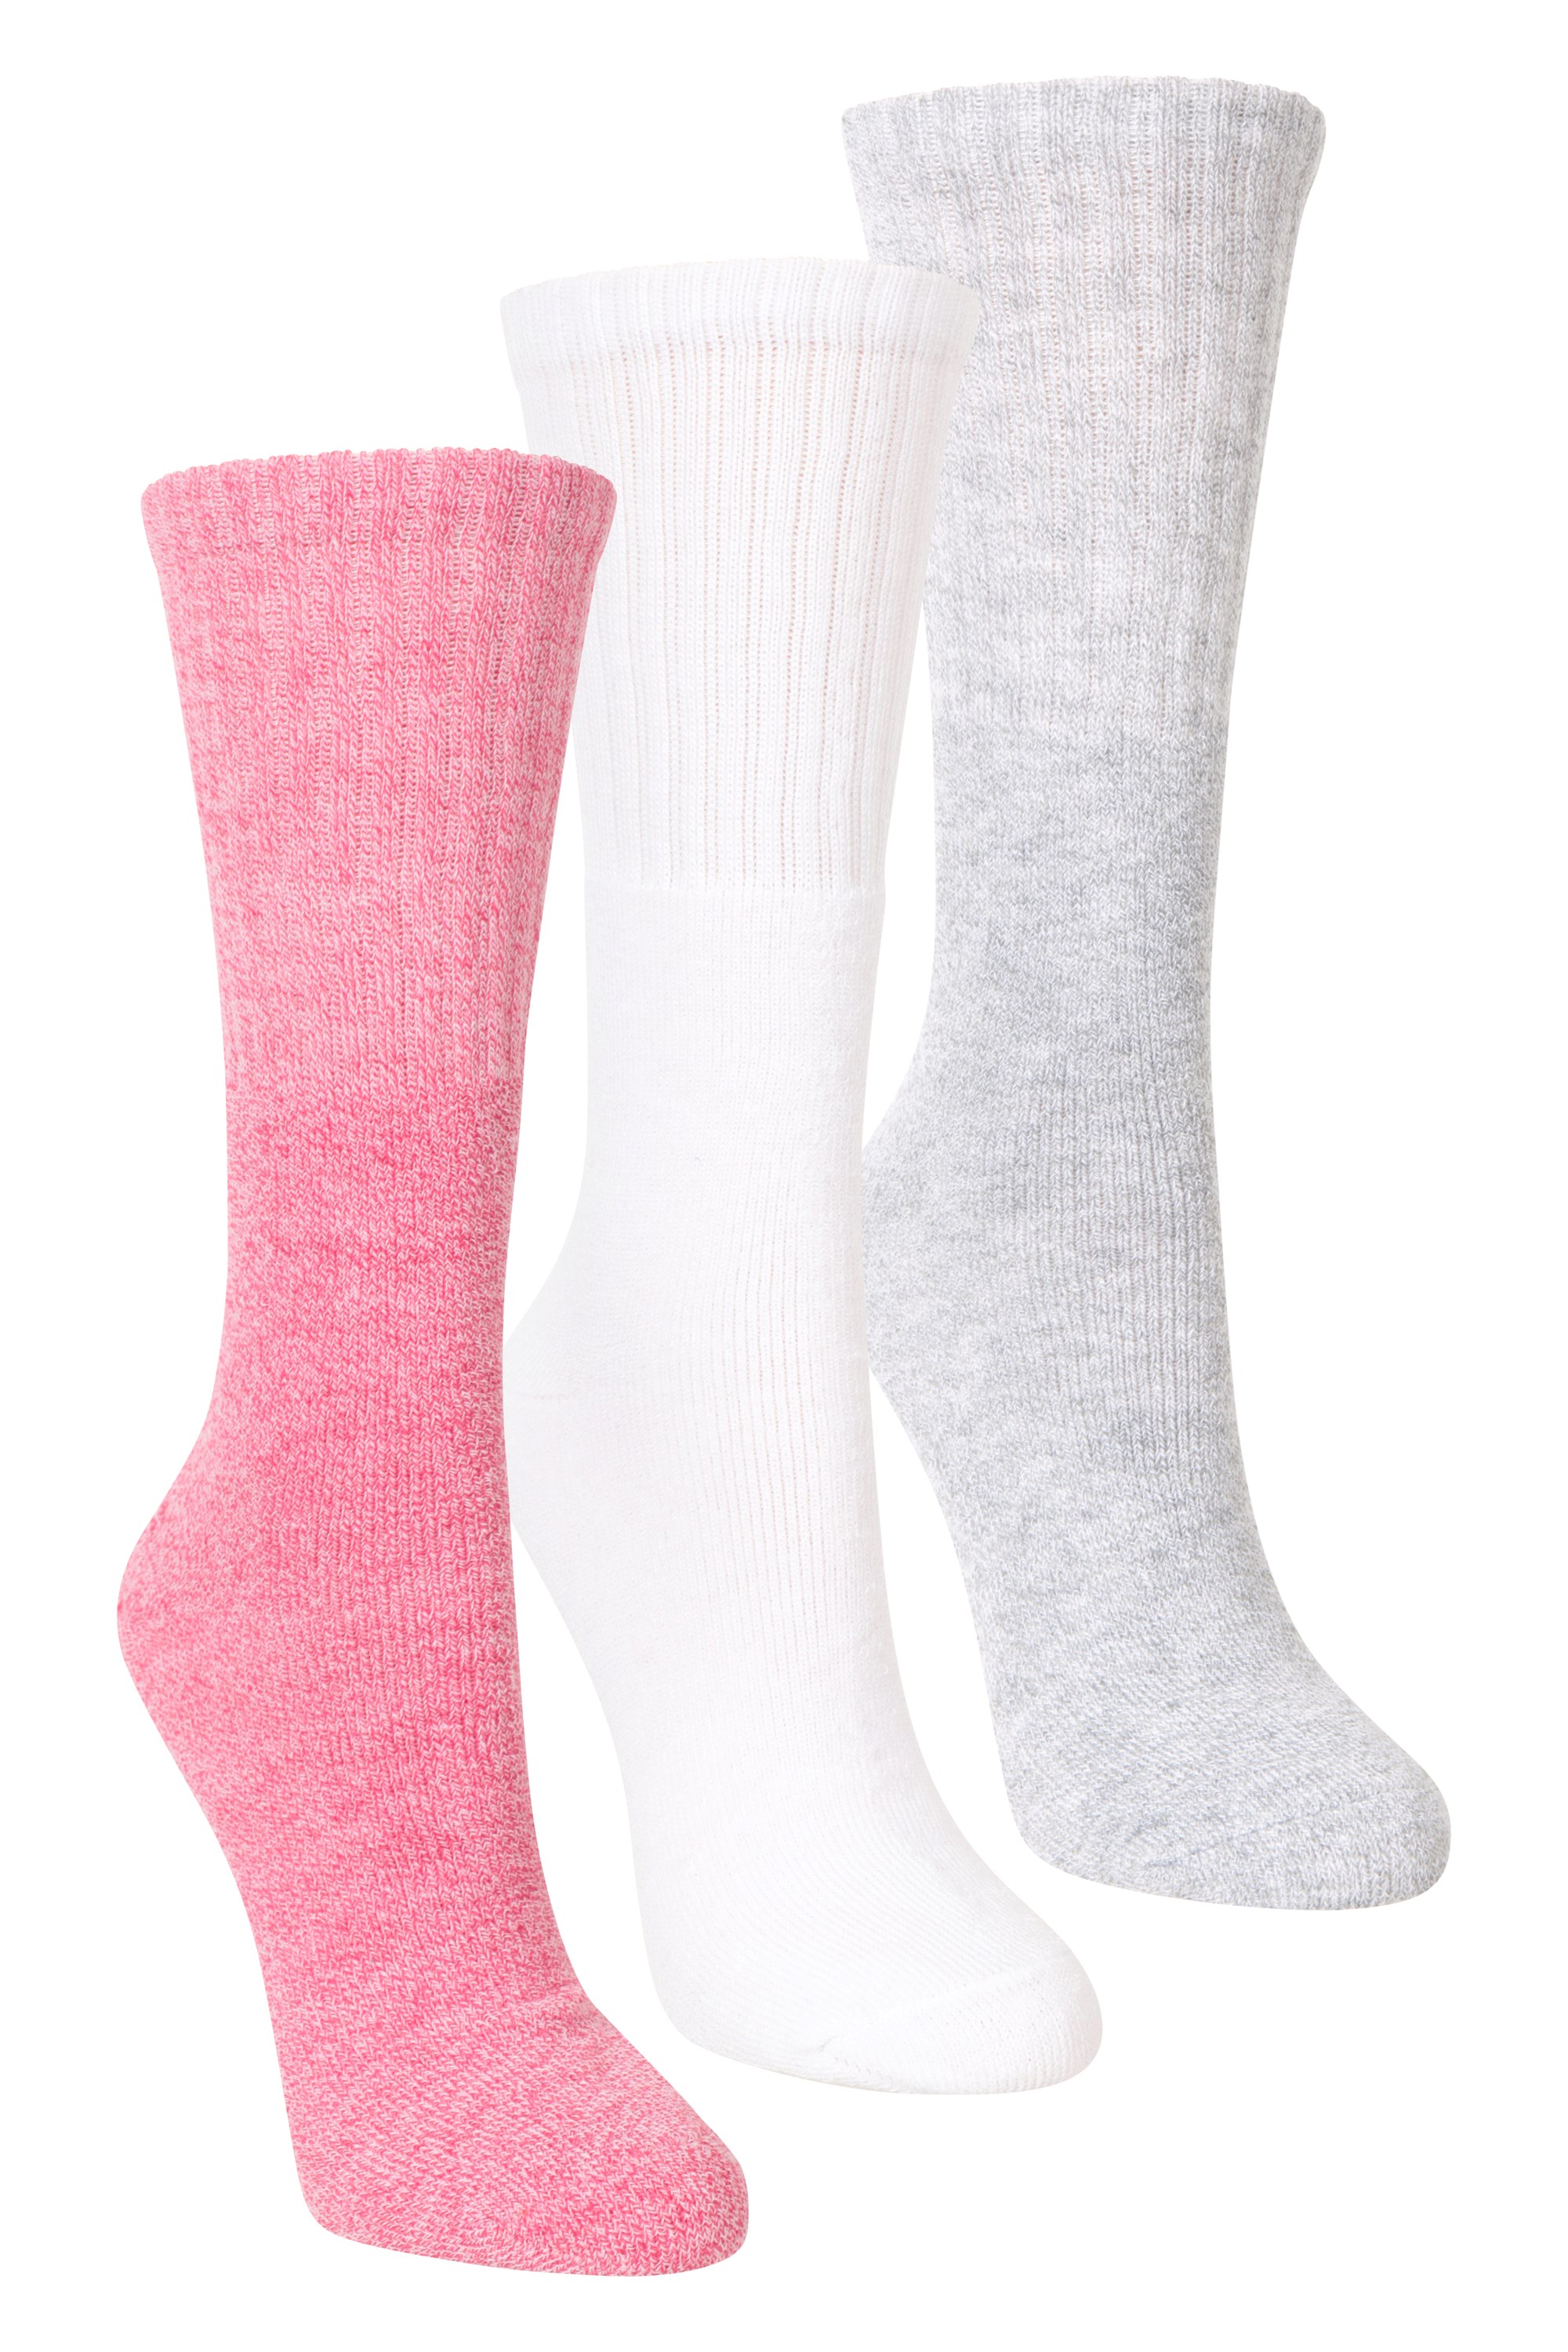 Outdoor Womens Walking Socks 3-pack - Pink